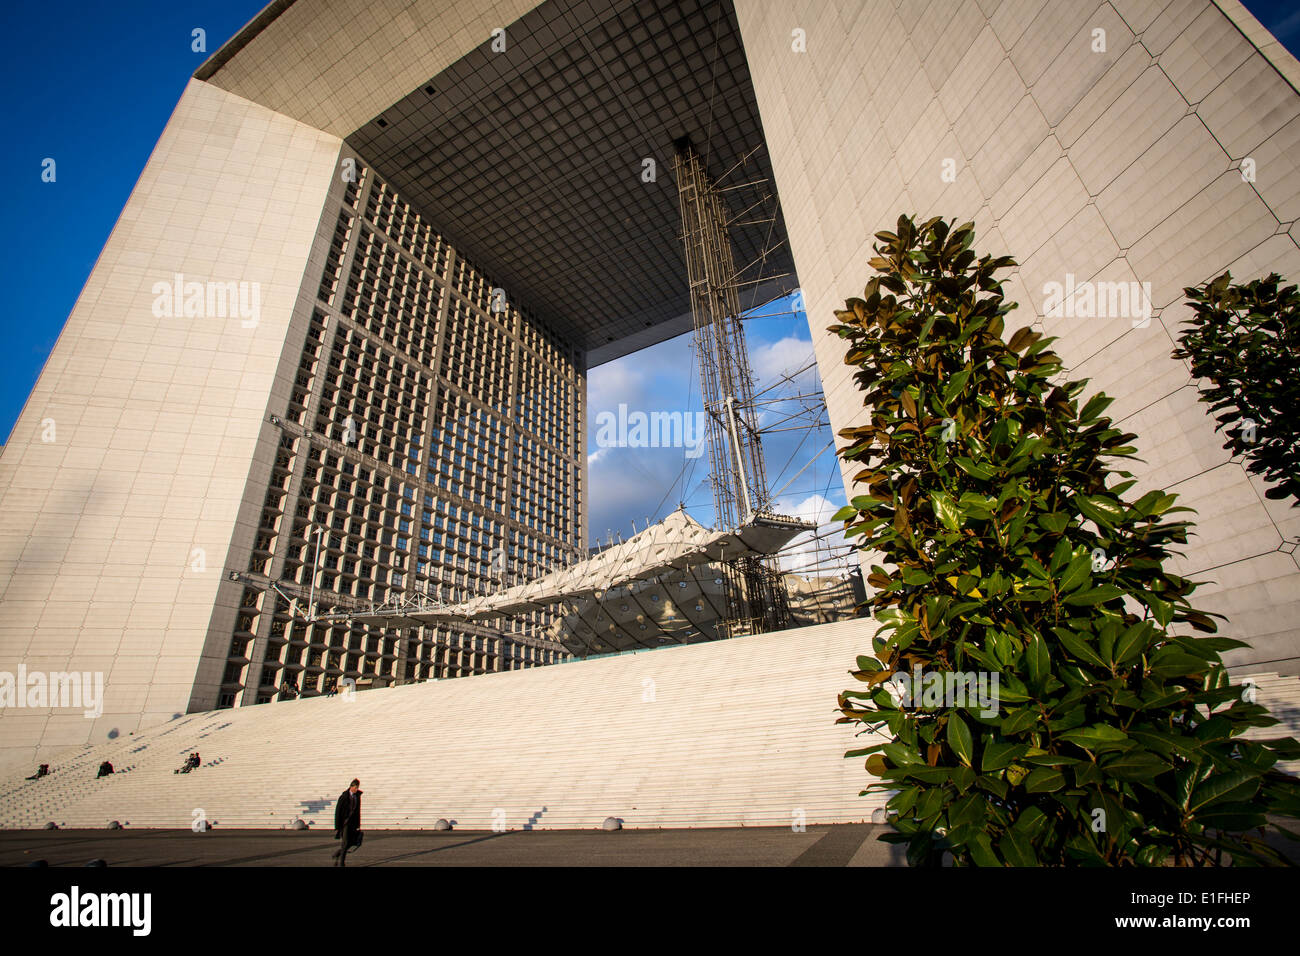 La Grande Arche in the modern business district - La Defense, Paris France Stock Photo